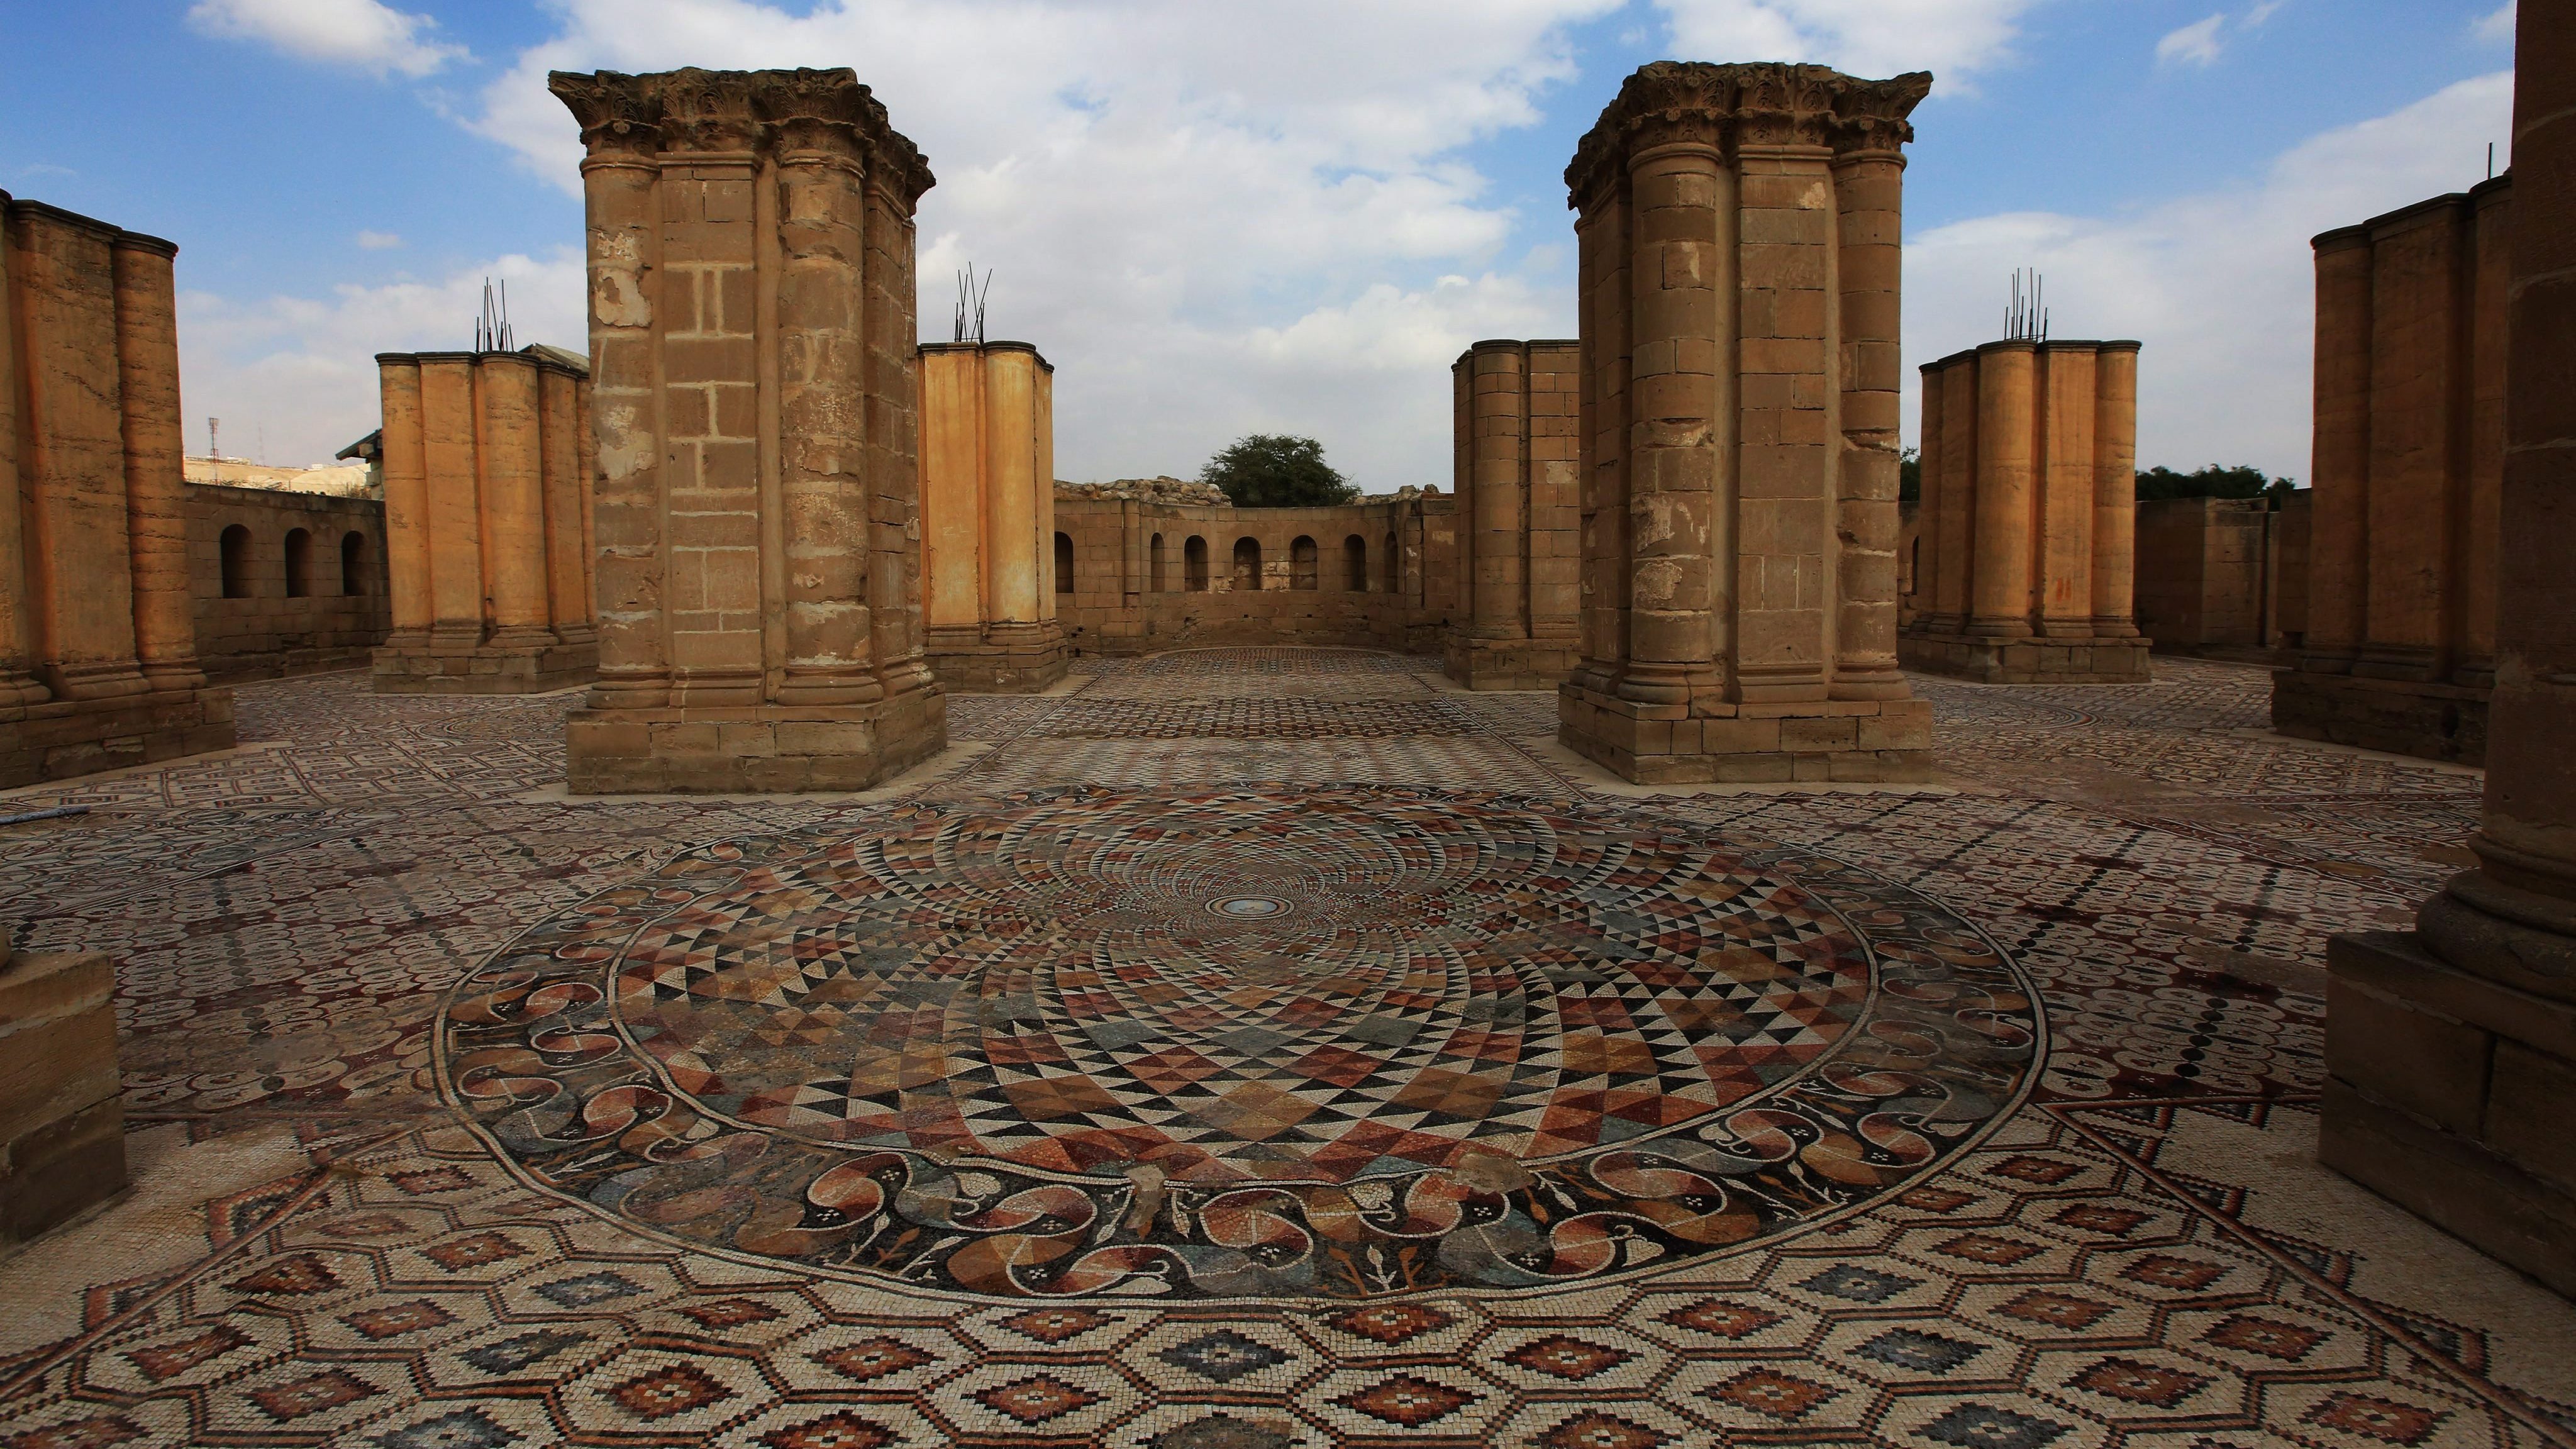 Jerikó, 2016. november 1. A 8. században épült Hisám-palota udvarát díszítõ színes mozaik térkõ részlete a ciszjordániai Jerikóban 2016. november 1-jén. Az összesen 827 négyzetméteres járófelület a világ legnagyobb fennmaradt mozaikja, amelyet a Palesztin Idegenforgalmi Minisztérium munkatársai sok éven át homokréteggel védtek az eróziótól, és csak nemrégiben tártak a nagyközönség elé. (MTI/EPA/Alaa Badarneh)